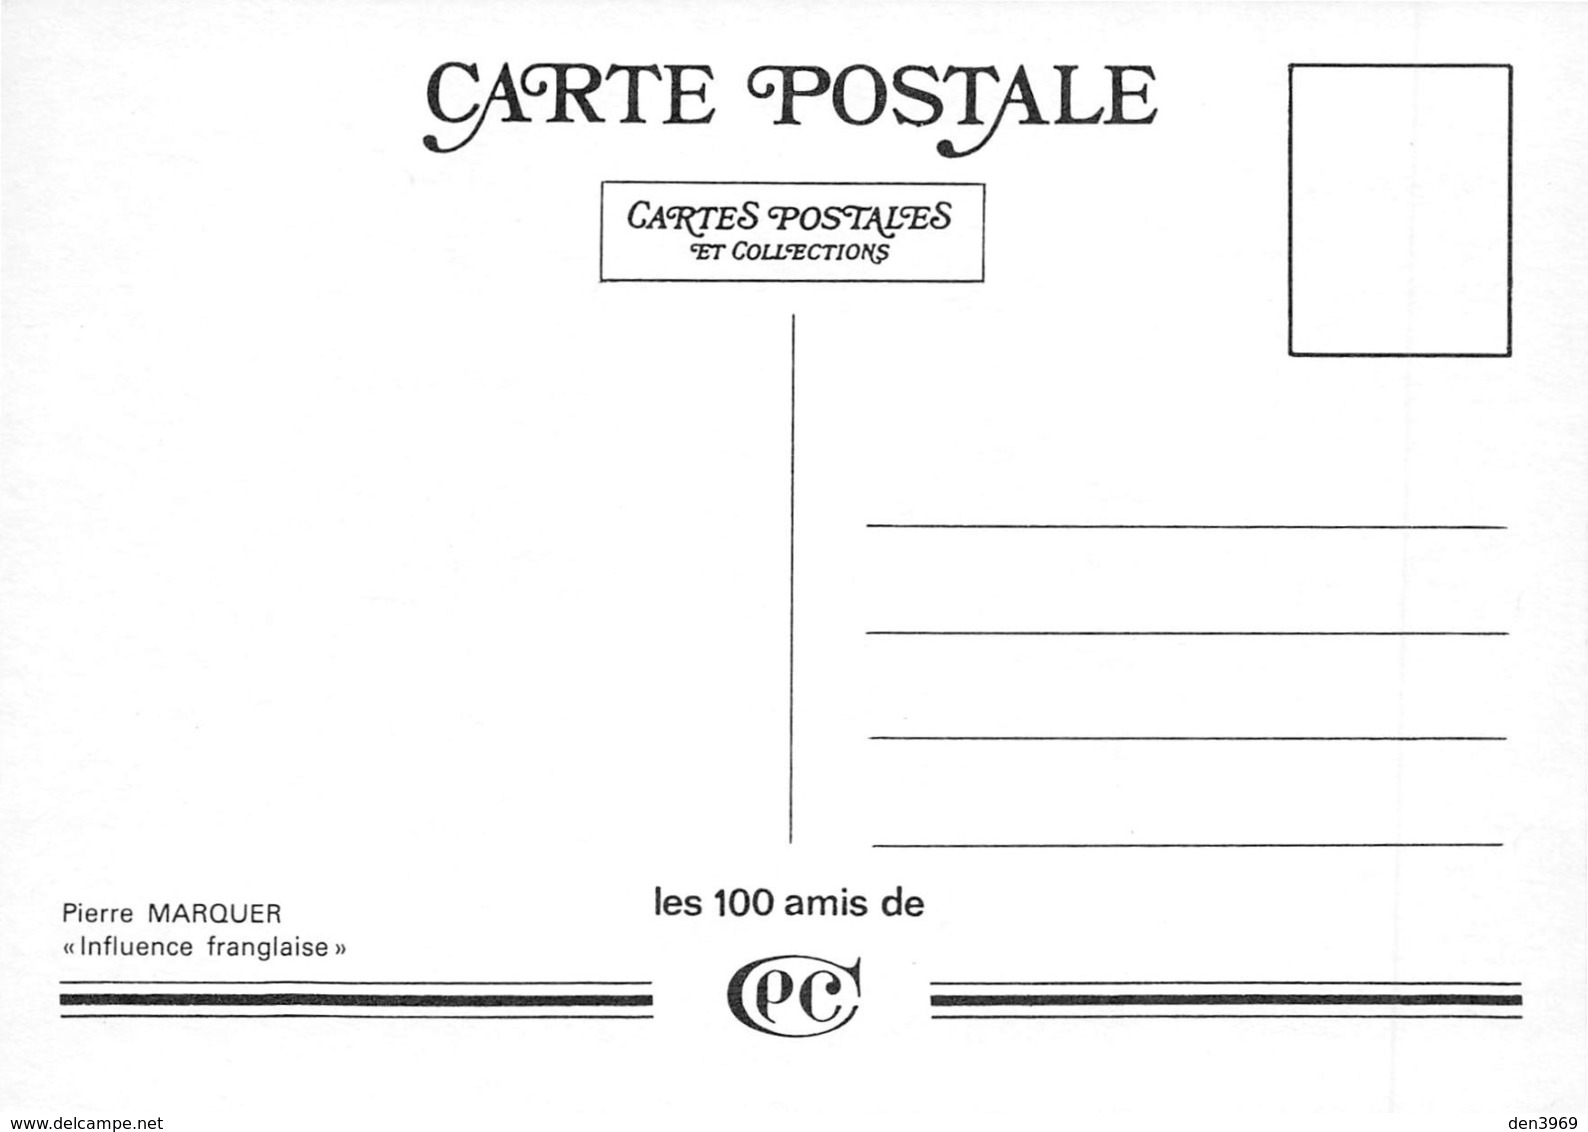 Pierre MARQUER - Influence Franglaise- Lady Di-Prince Charles - Série Les 100 Amis De CPC - Carte Postale Et Collections - Marquer